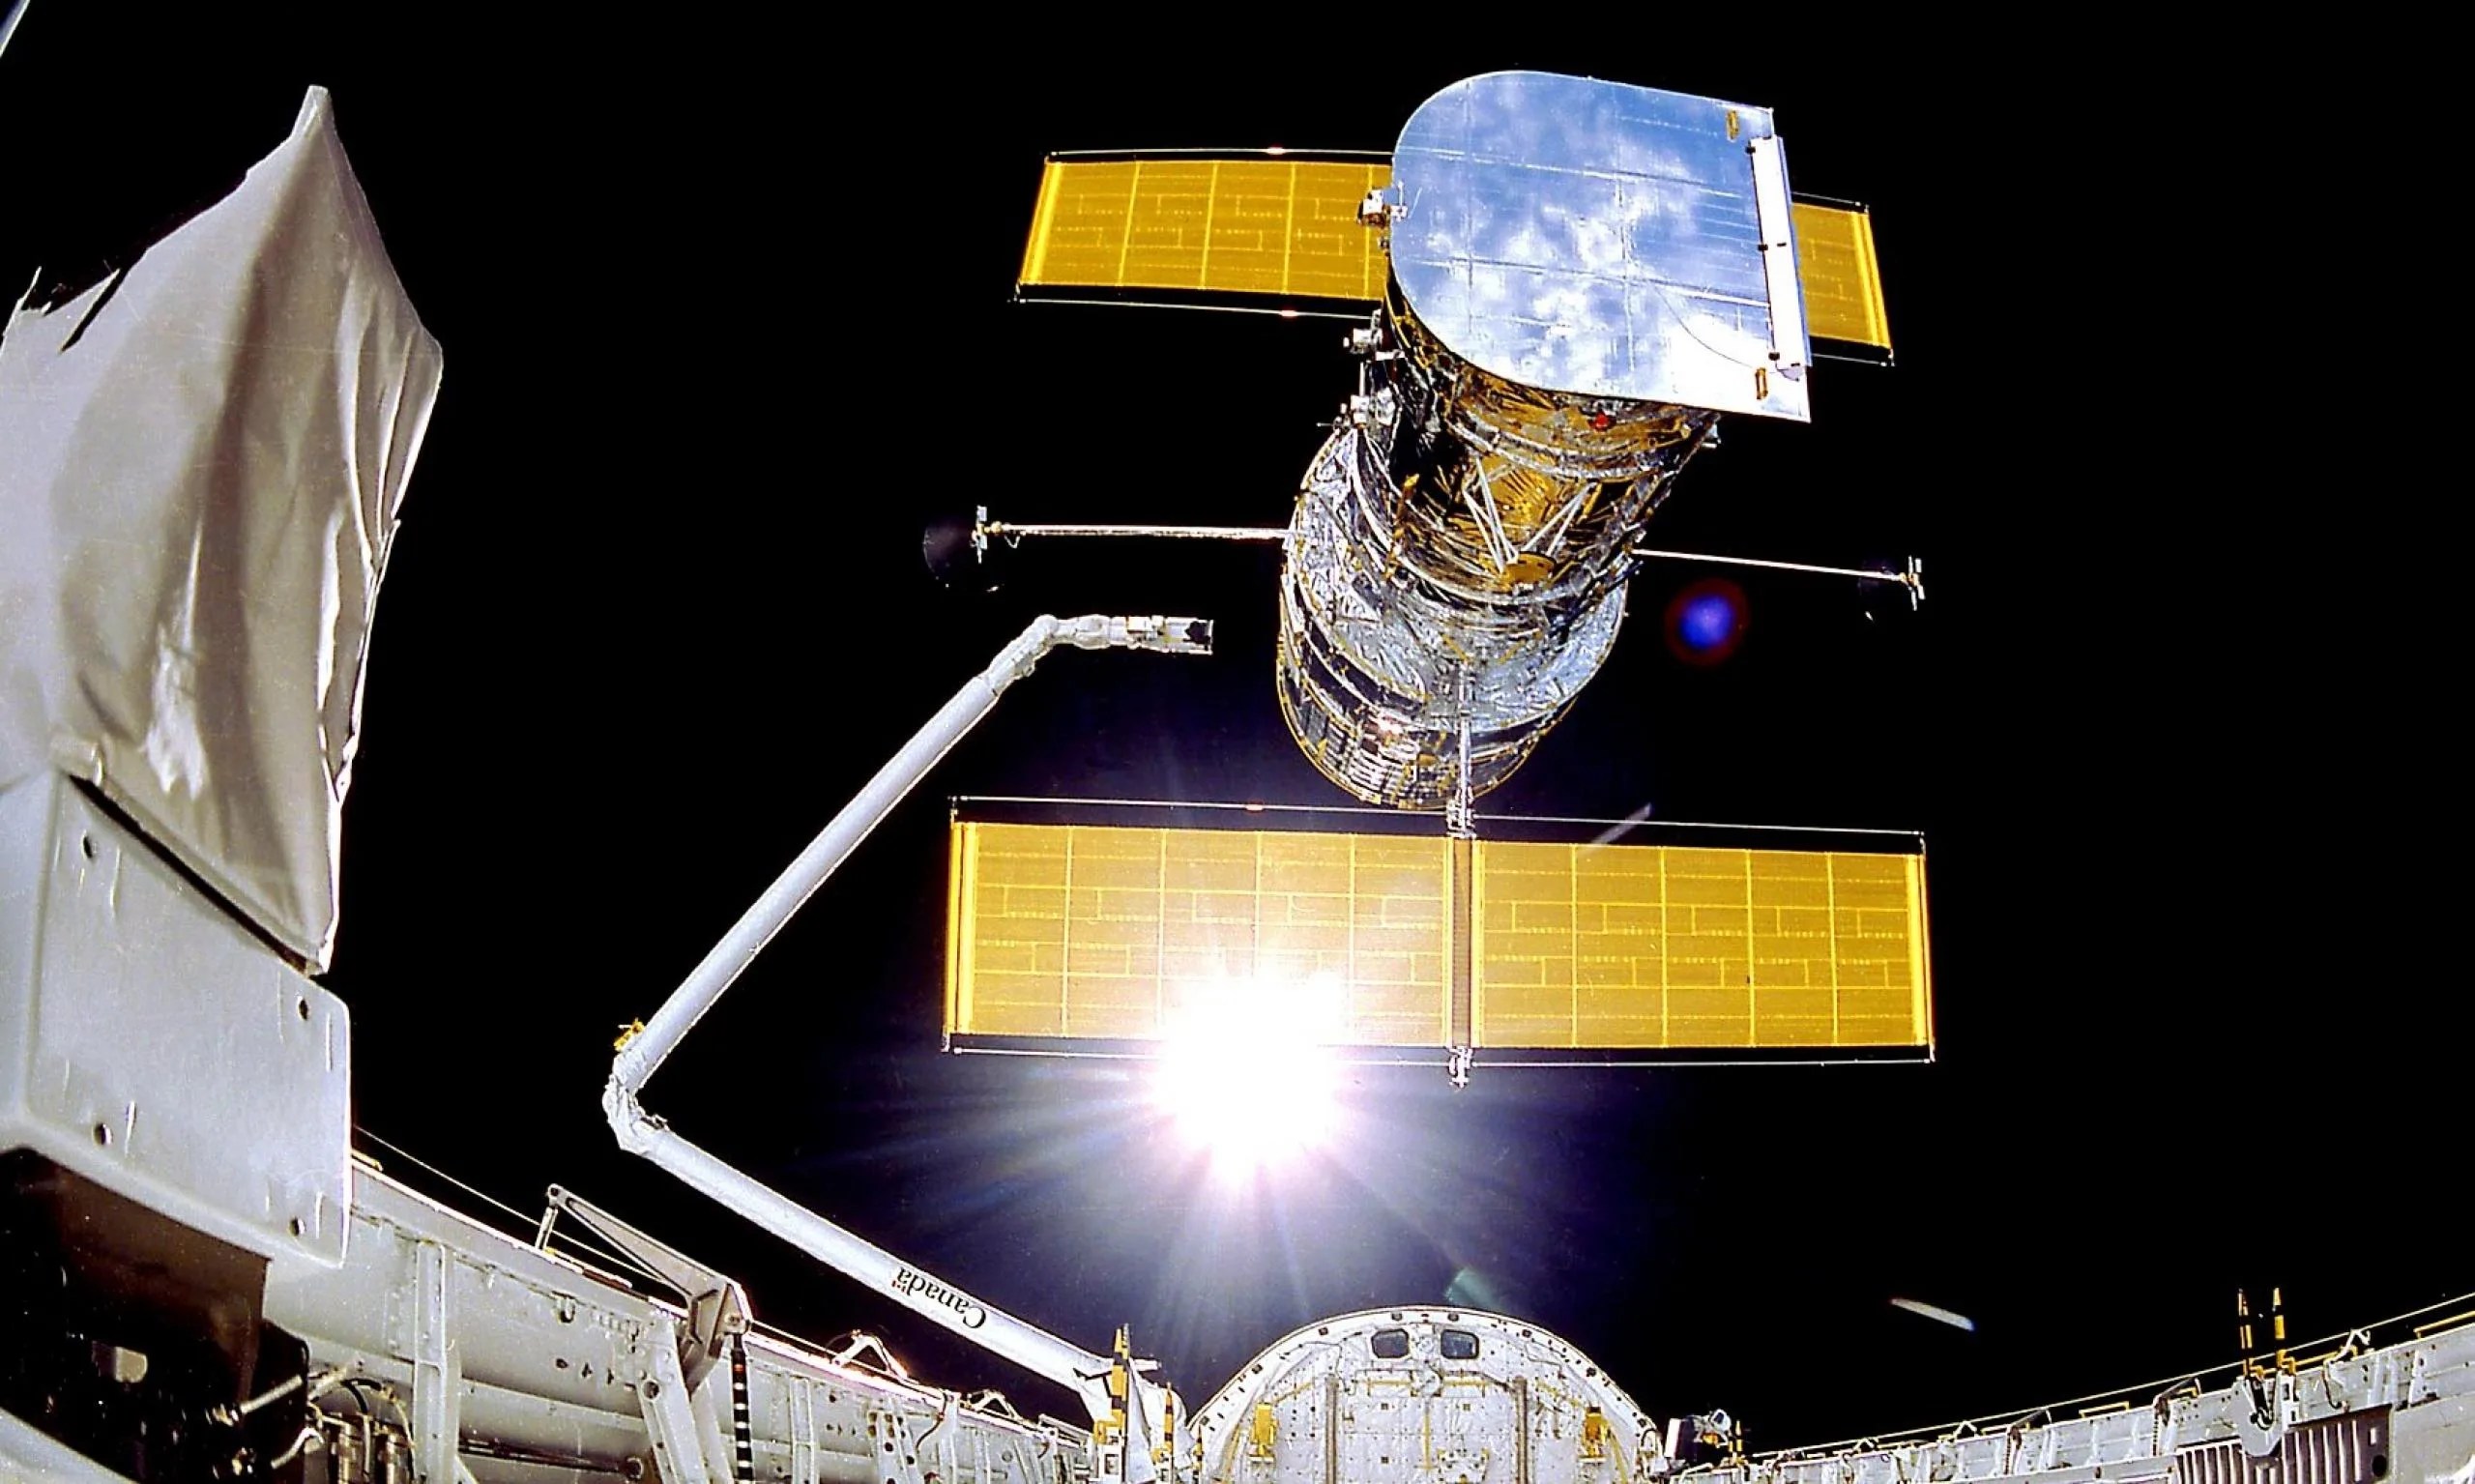 Telescopio espacial Hubble de la NASA